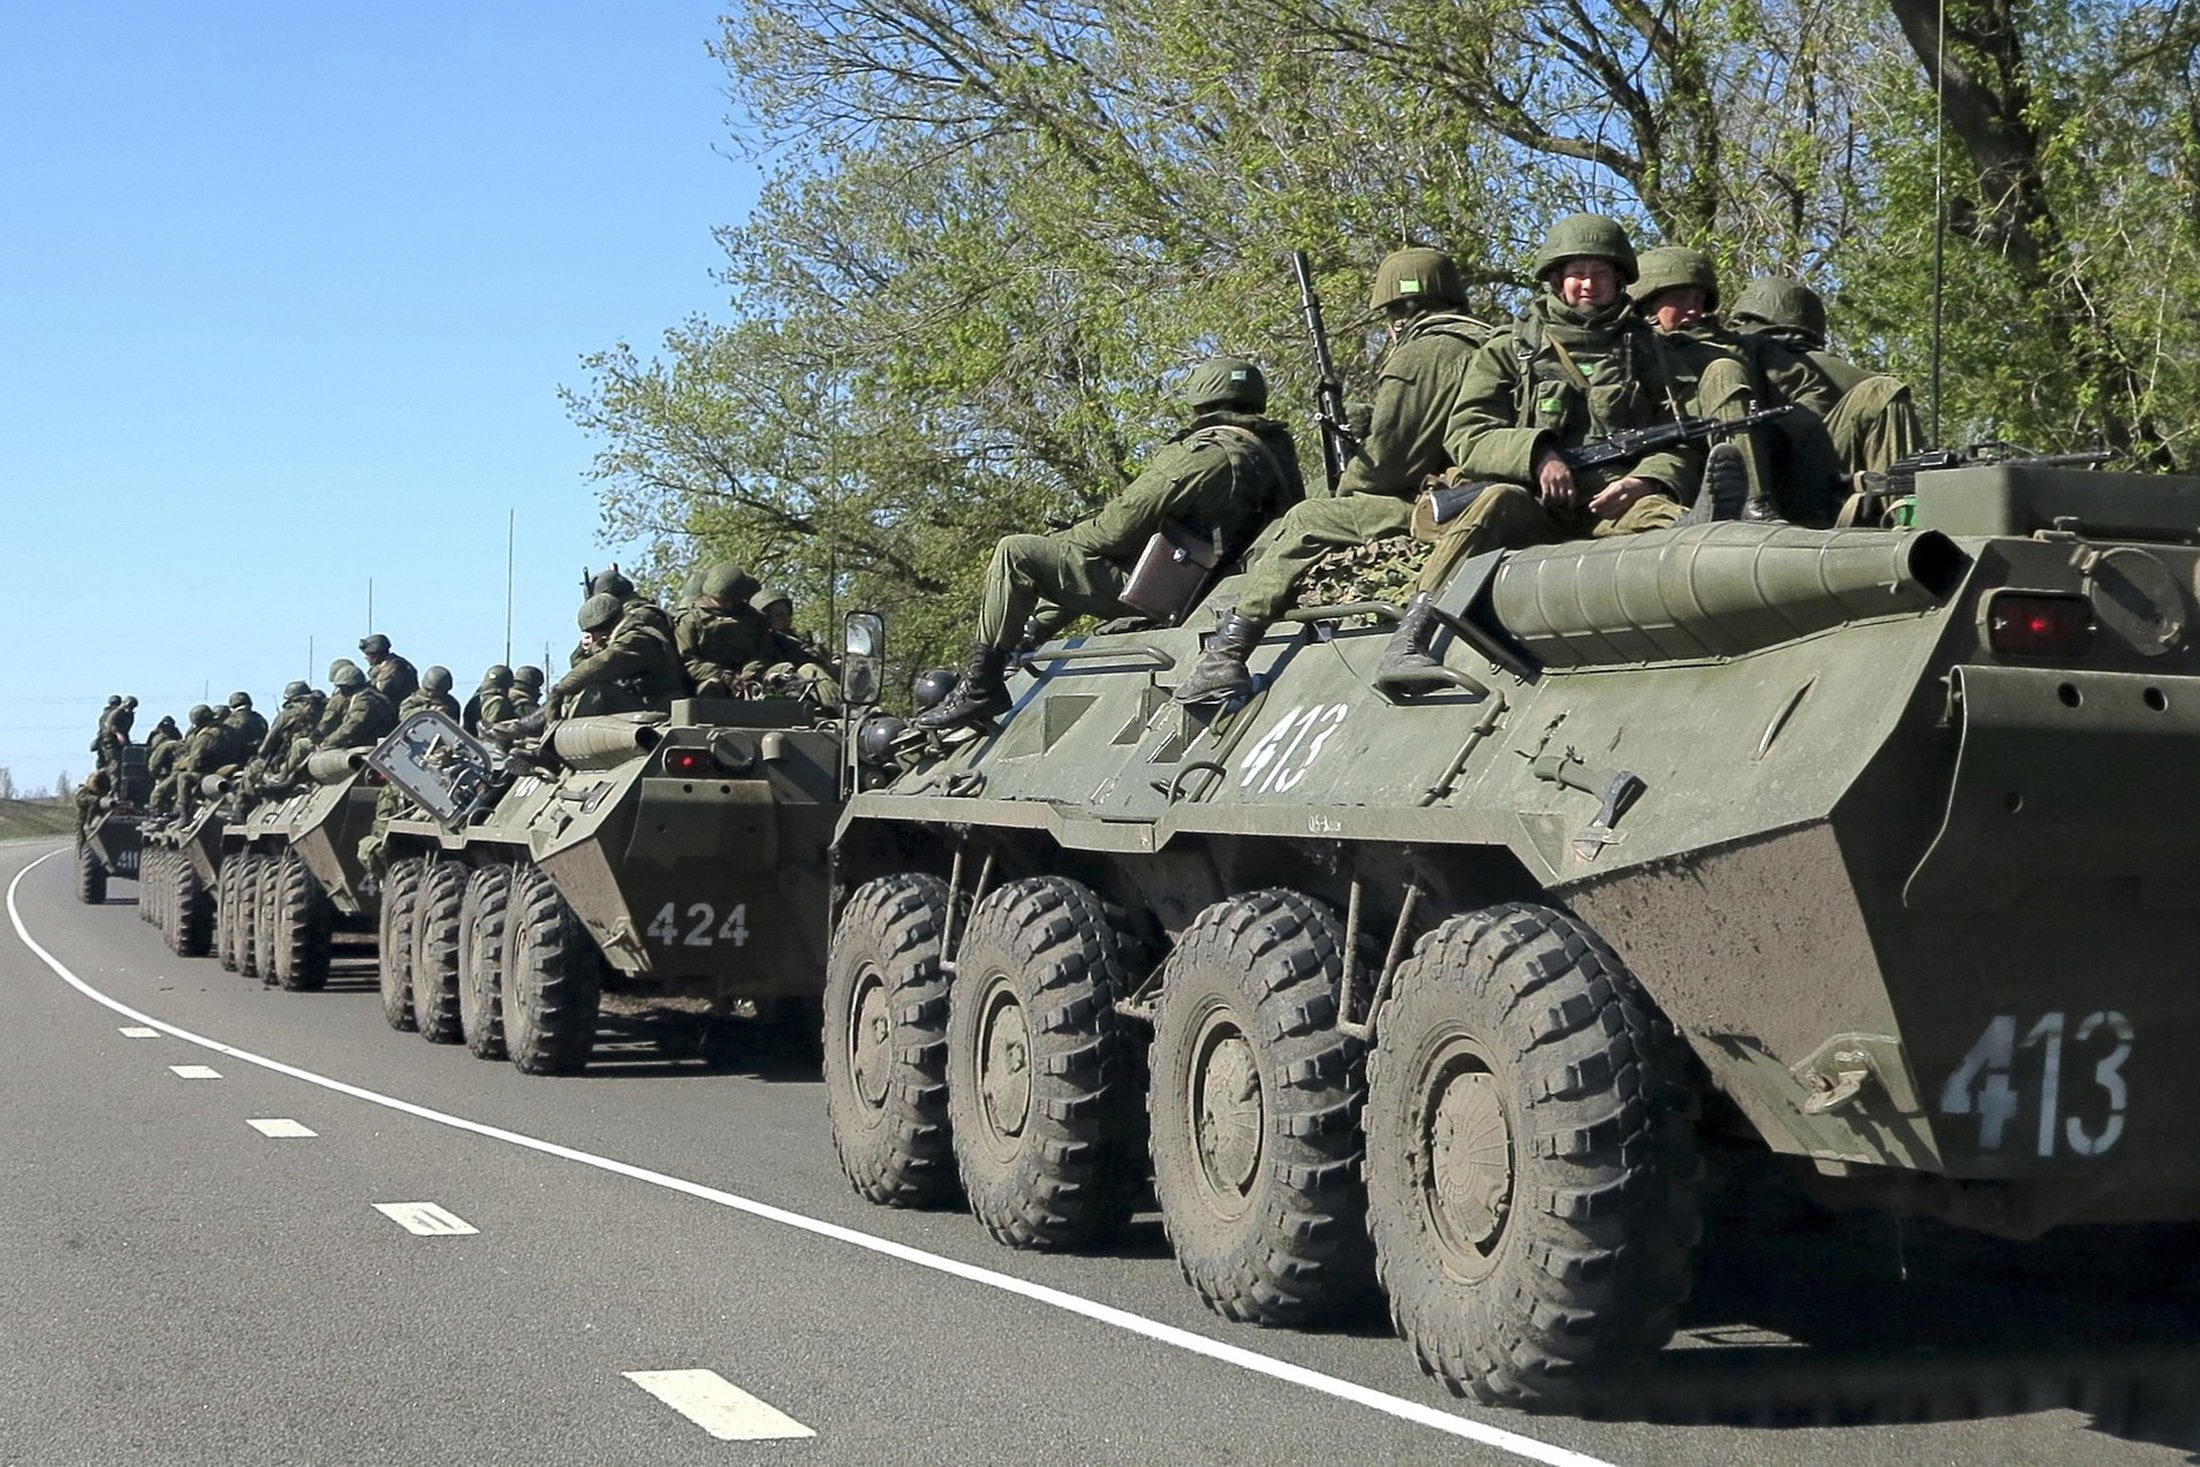 Збройні сили РФ продовжують передислокацію поблизу кордону з Україною. Триває передислокація підрозділів Збройних сил Російської федерації поблизу російсько-українського кордону, передає прес-служба РНБО.